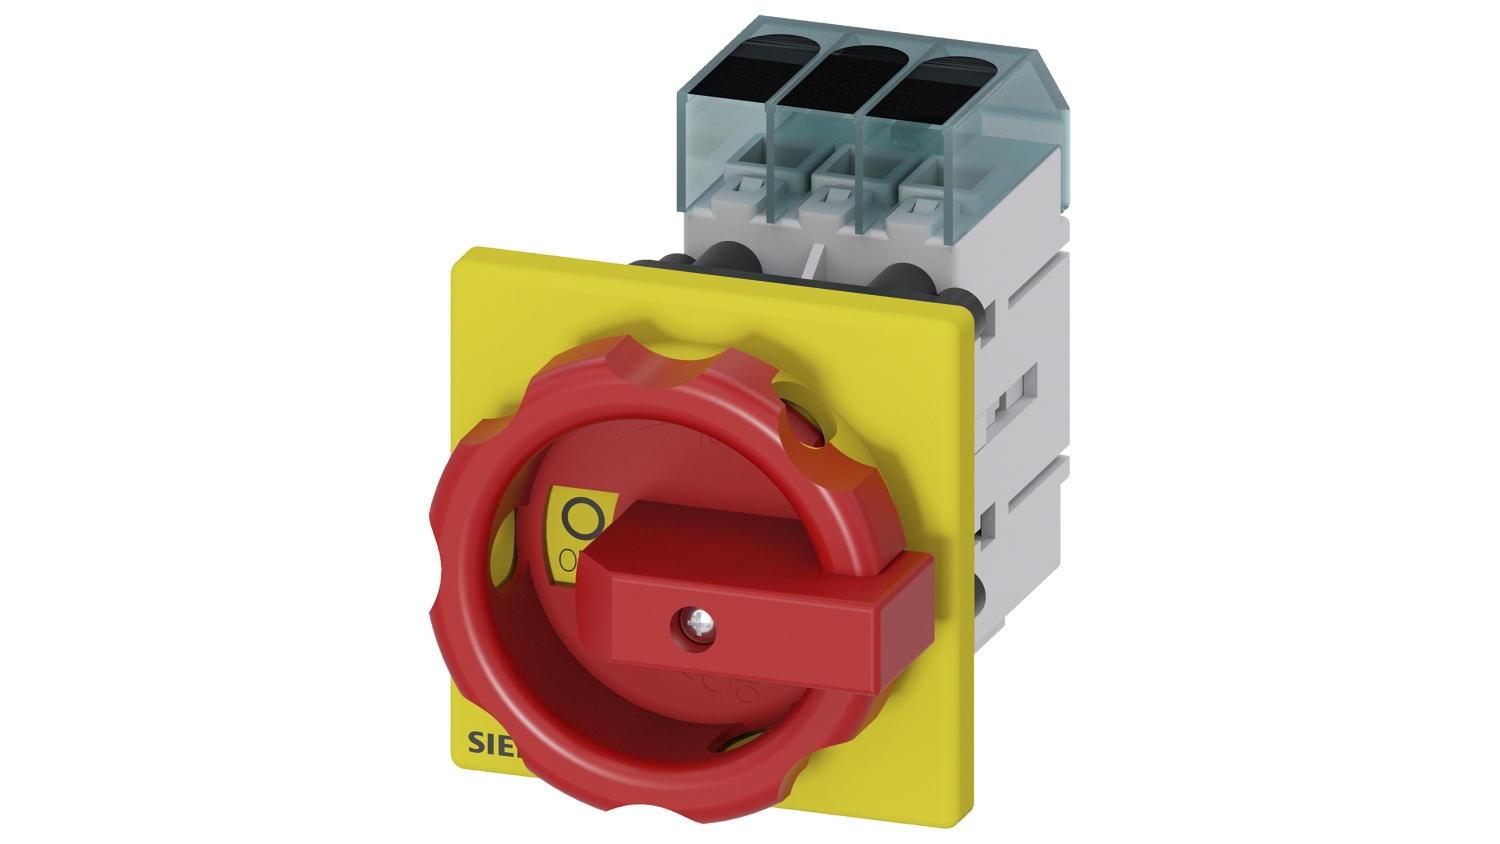 Interrupteurs sectionneurs sans fusible 3LD3 - Poignée rouge / Jaune - Fixation en face Siemens 